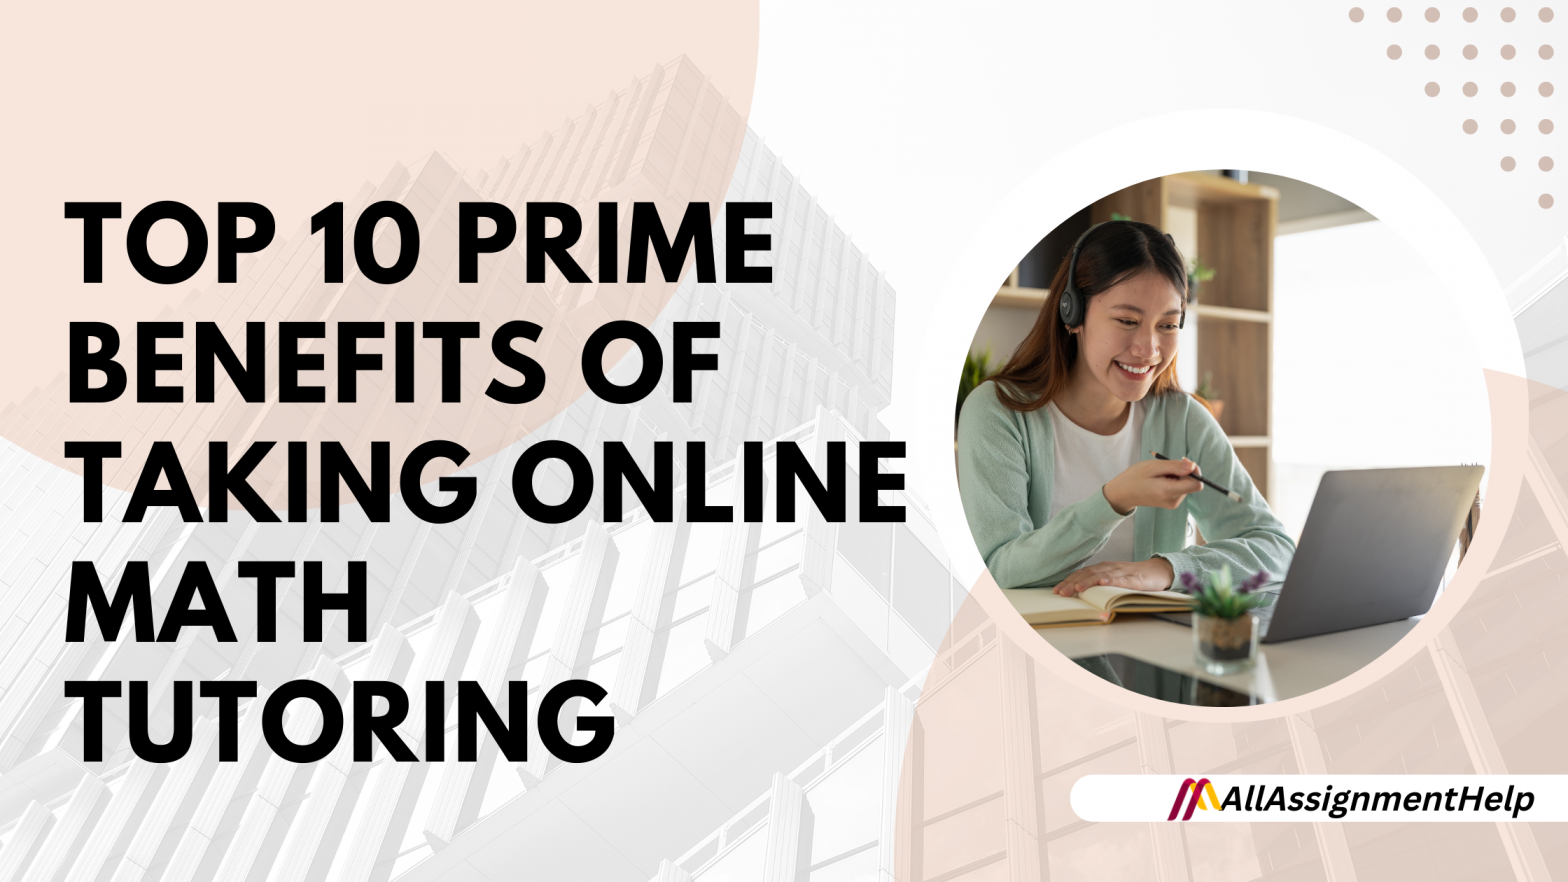 Top 10 Prime Benefits of Taking Online Math Tutoring